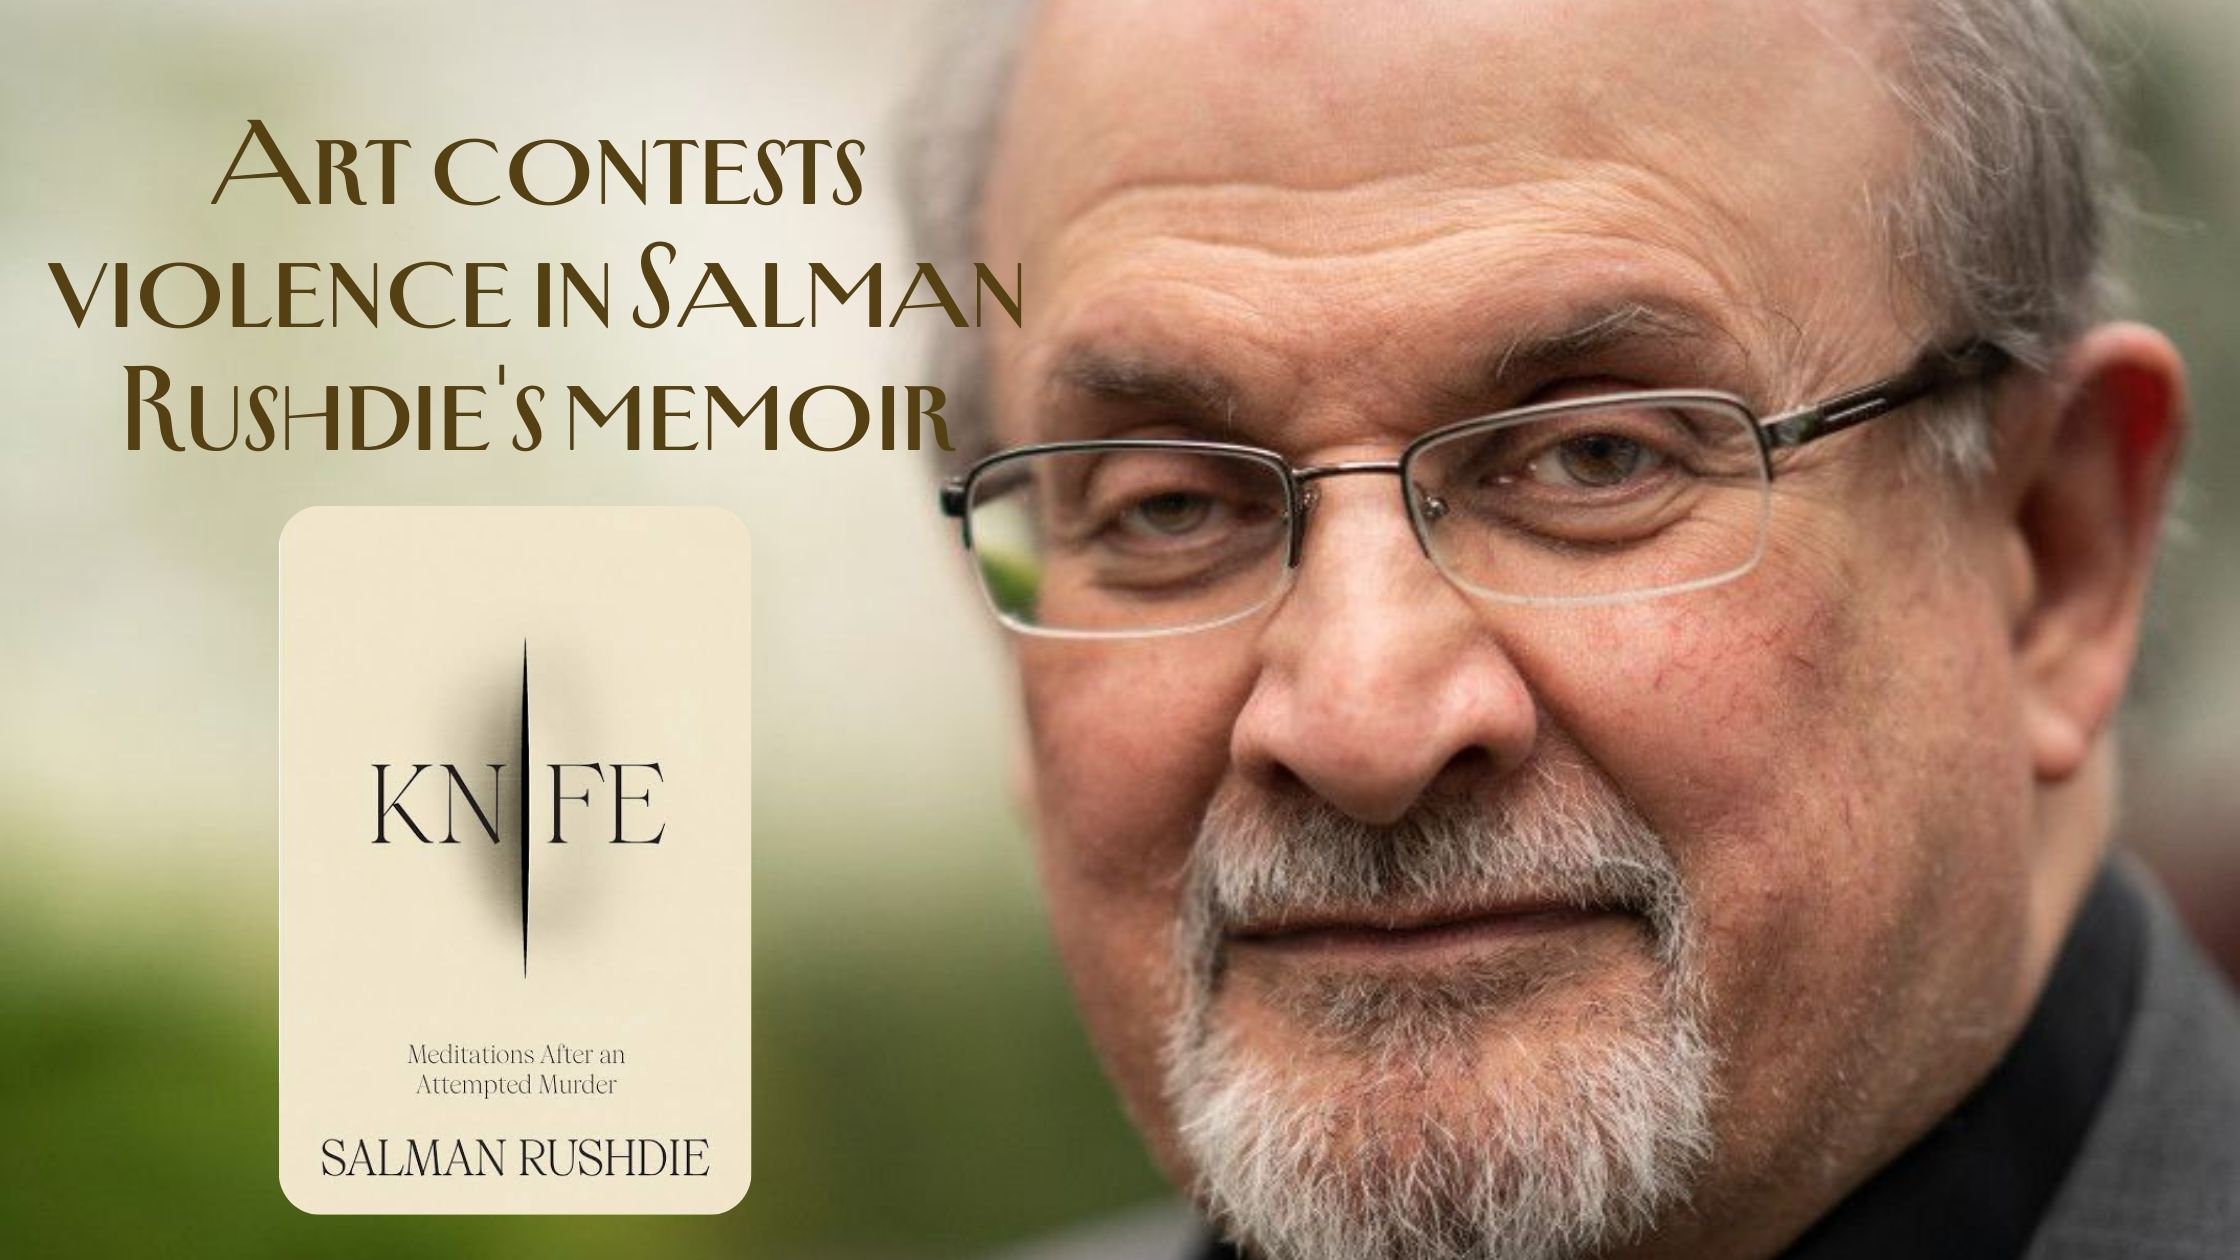 Art contests violence in Salman Rushdie’s memoir